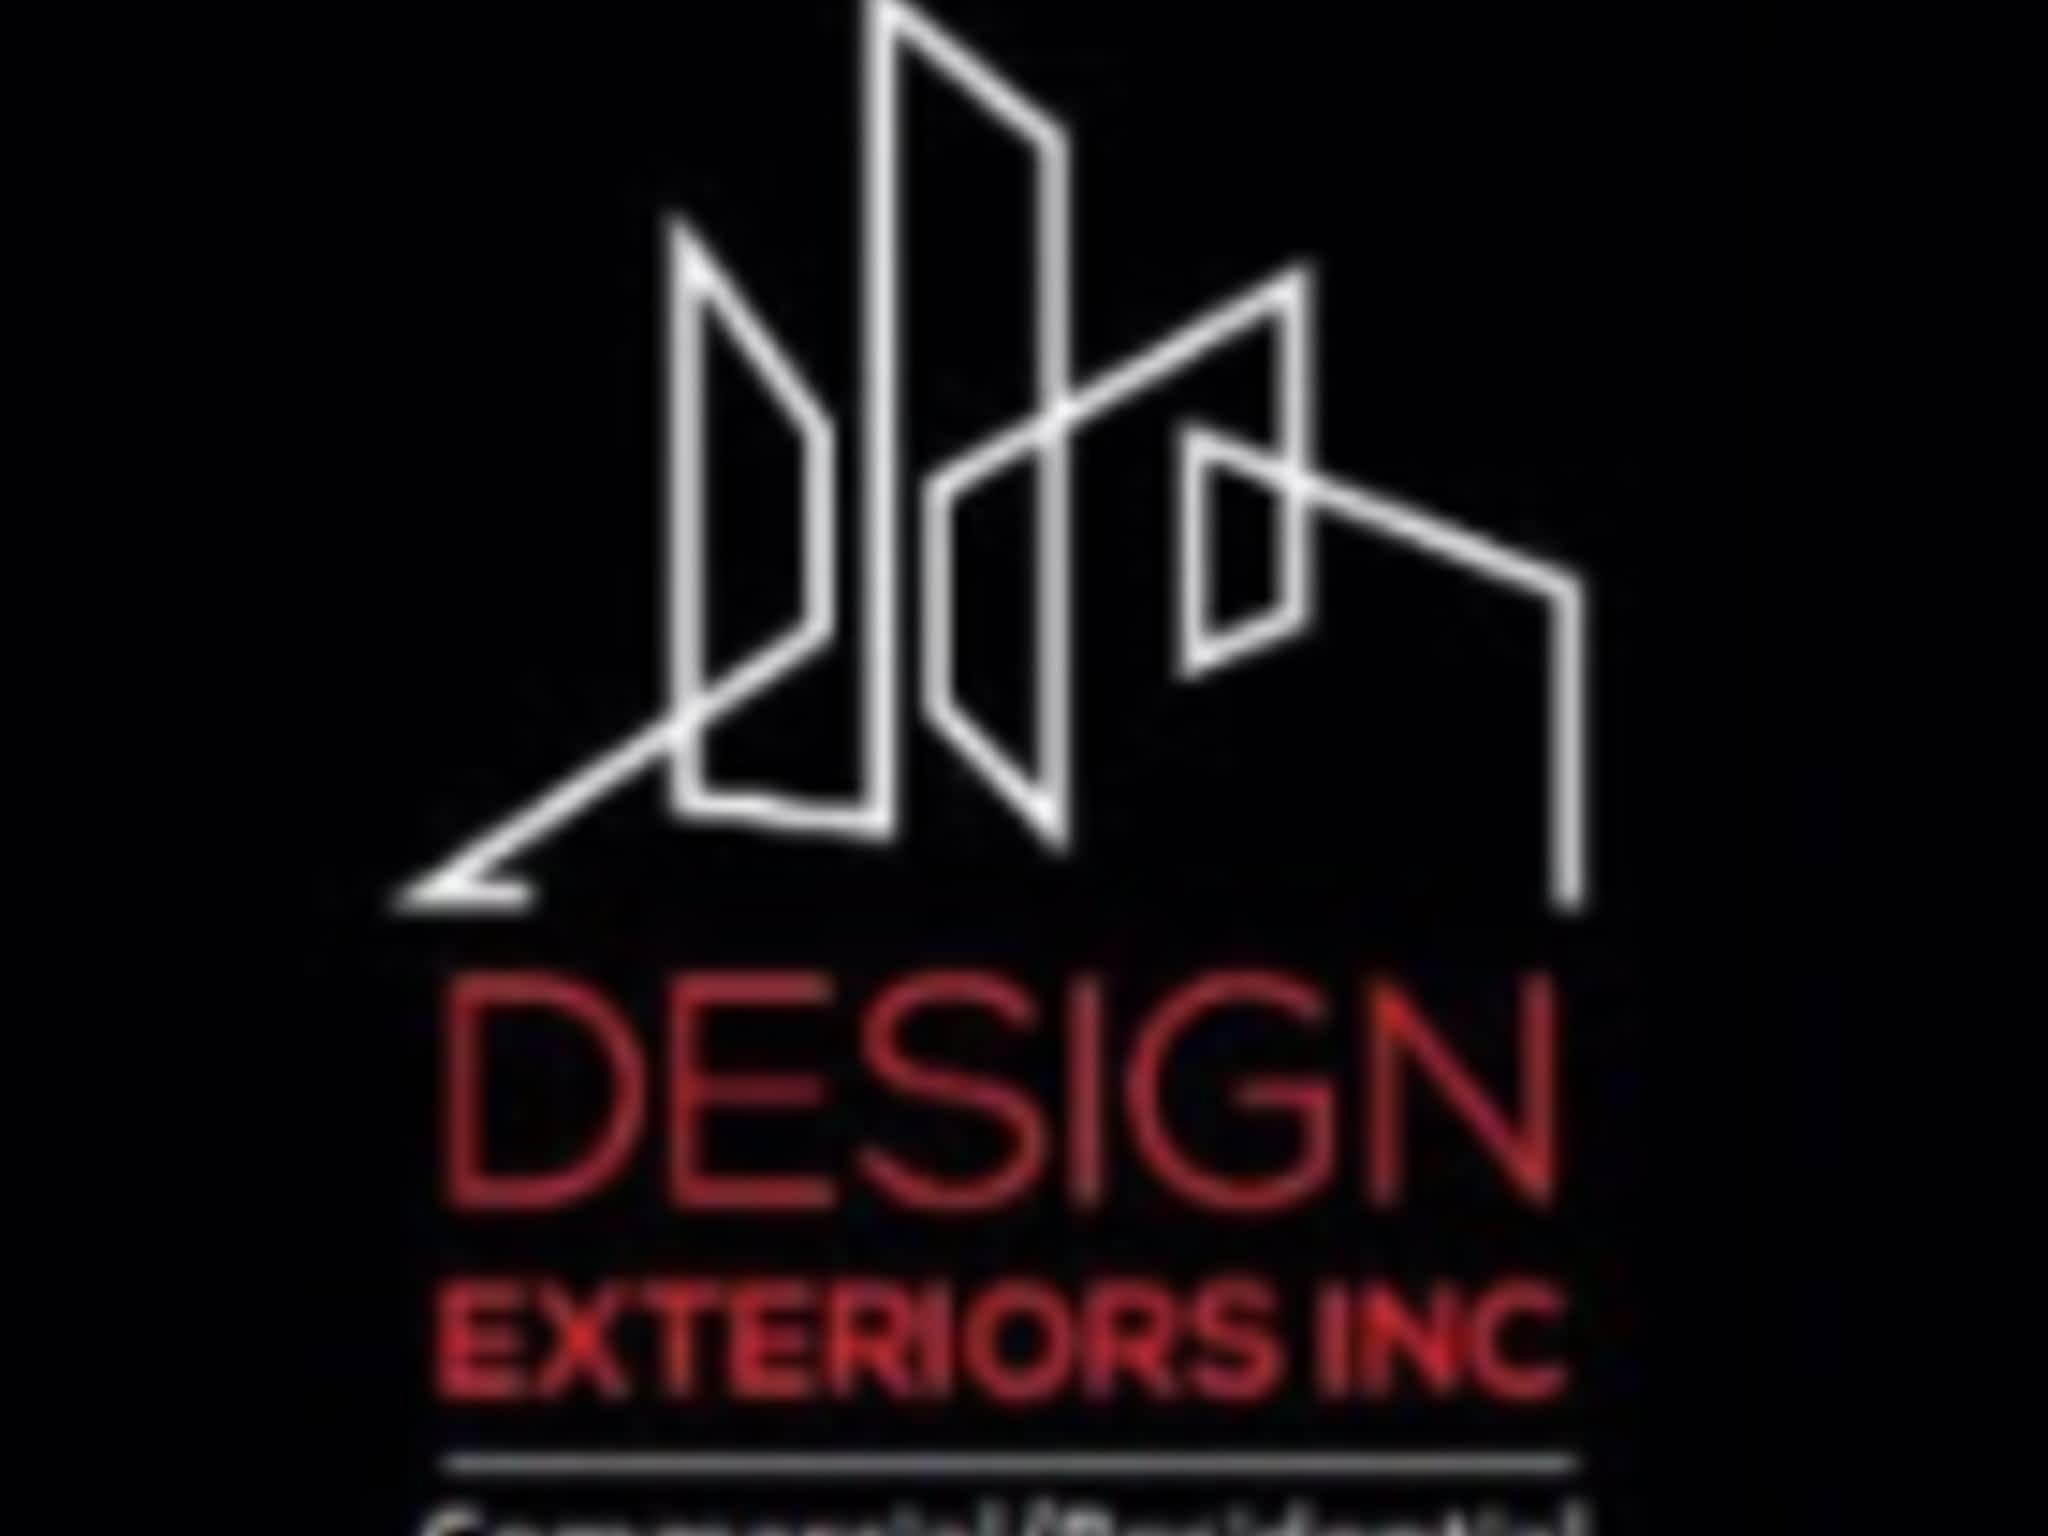 photo Design Exteriors Inc